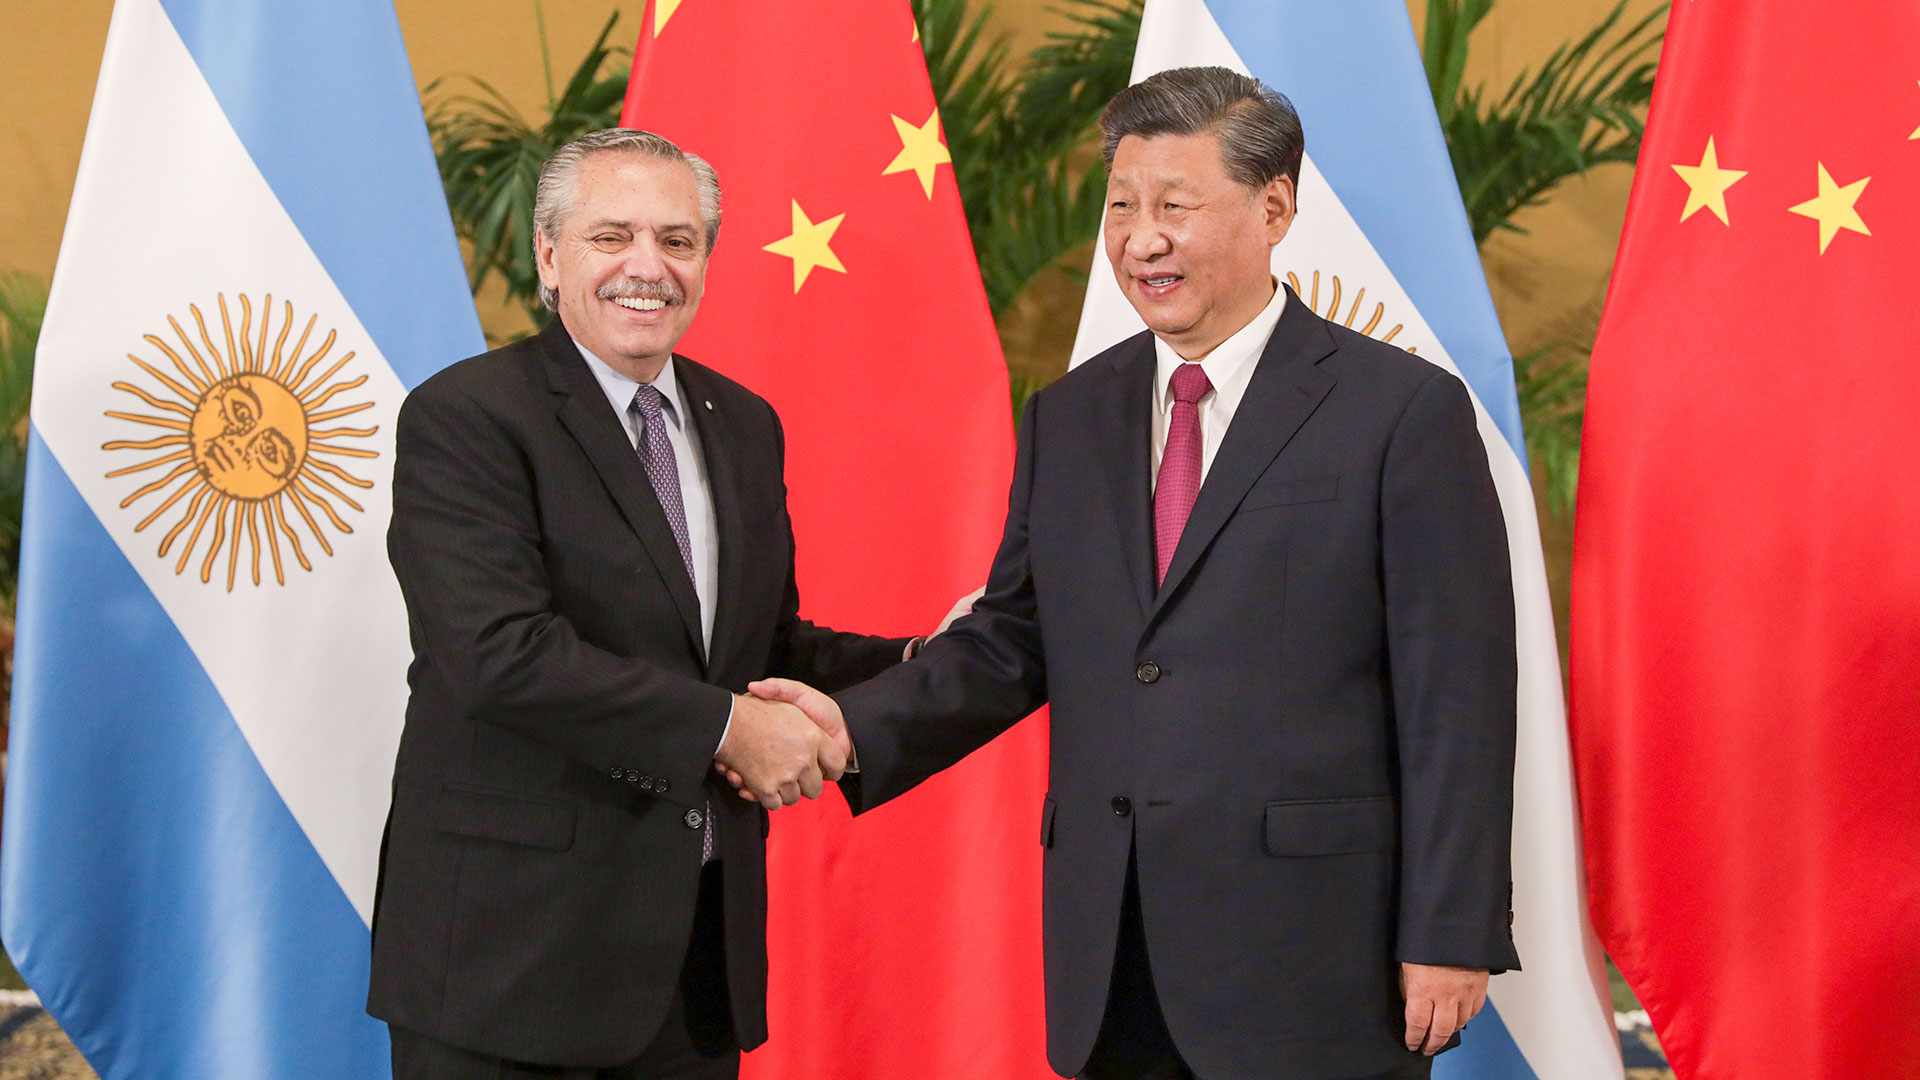 El avance de China en América con apoyo de los Gobiernos locales: advierten que el principal objetivo de Xi Jinping es el litio argentino